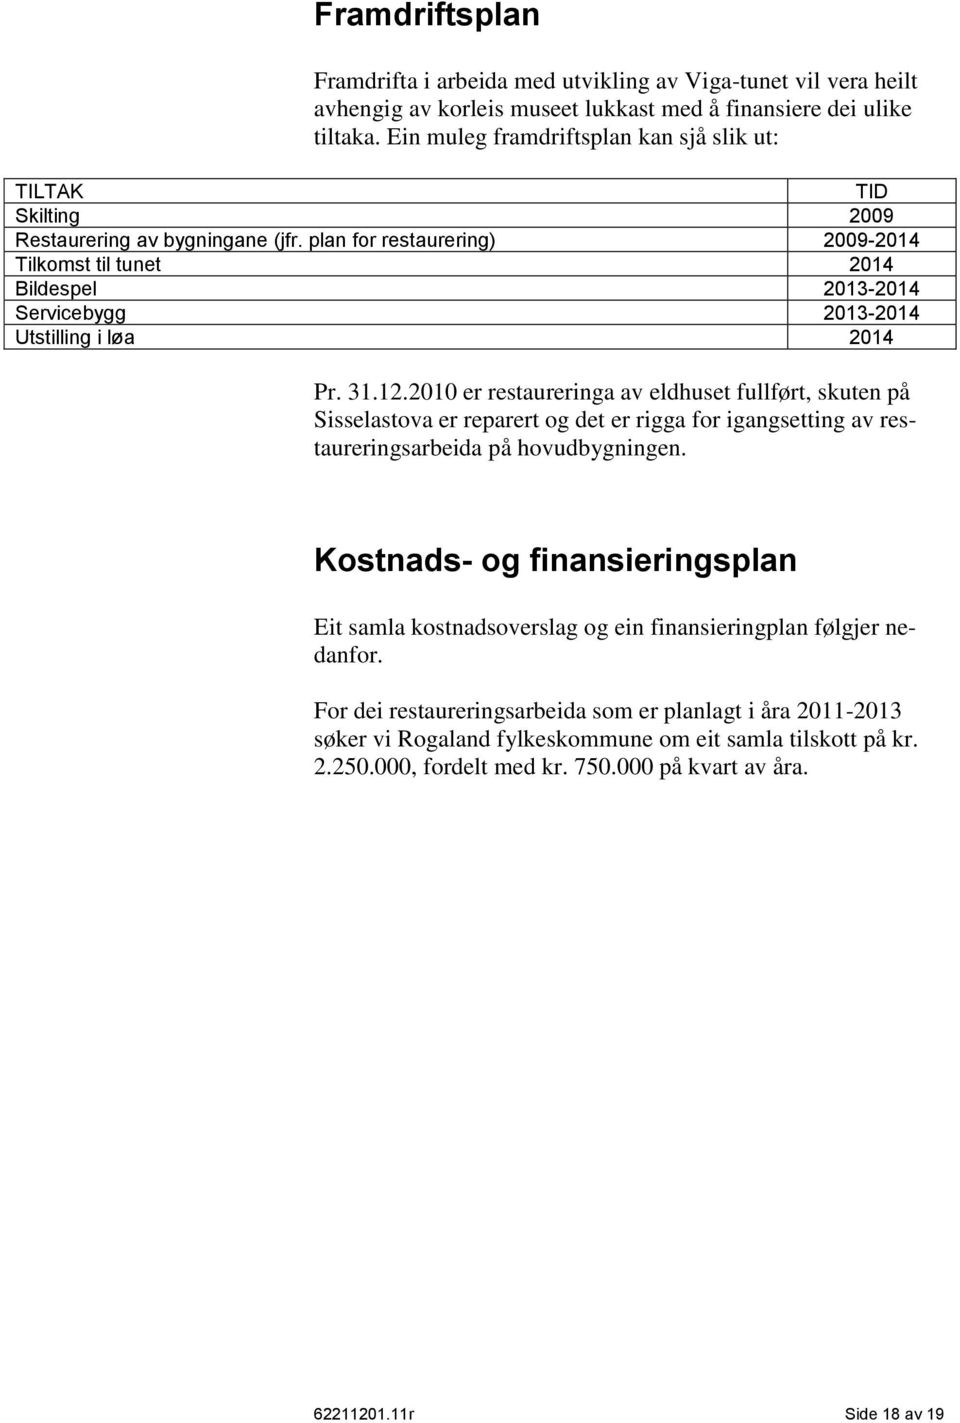 plan for restaurering) 2009-2014 Tilkomst til tunet 2014 Bildespel 2013-2014 Servicebygg 2013-2014 Utstilling i løa 2014 Pr. 31.12.